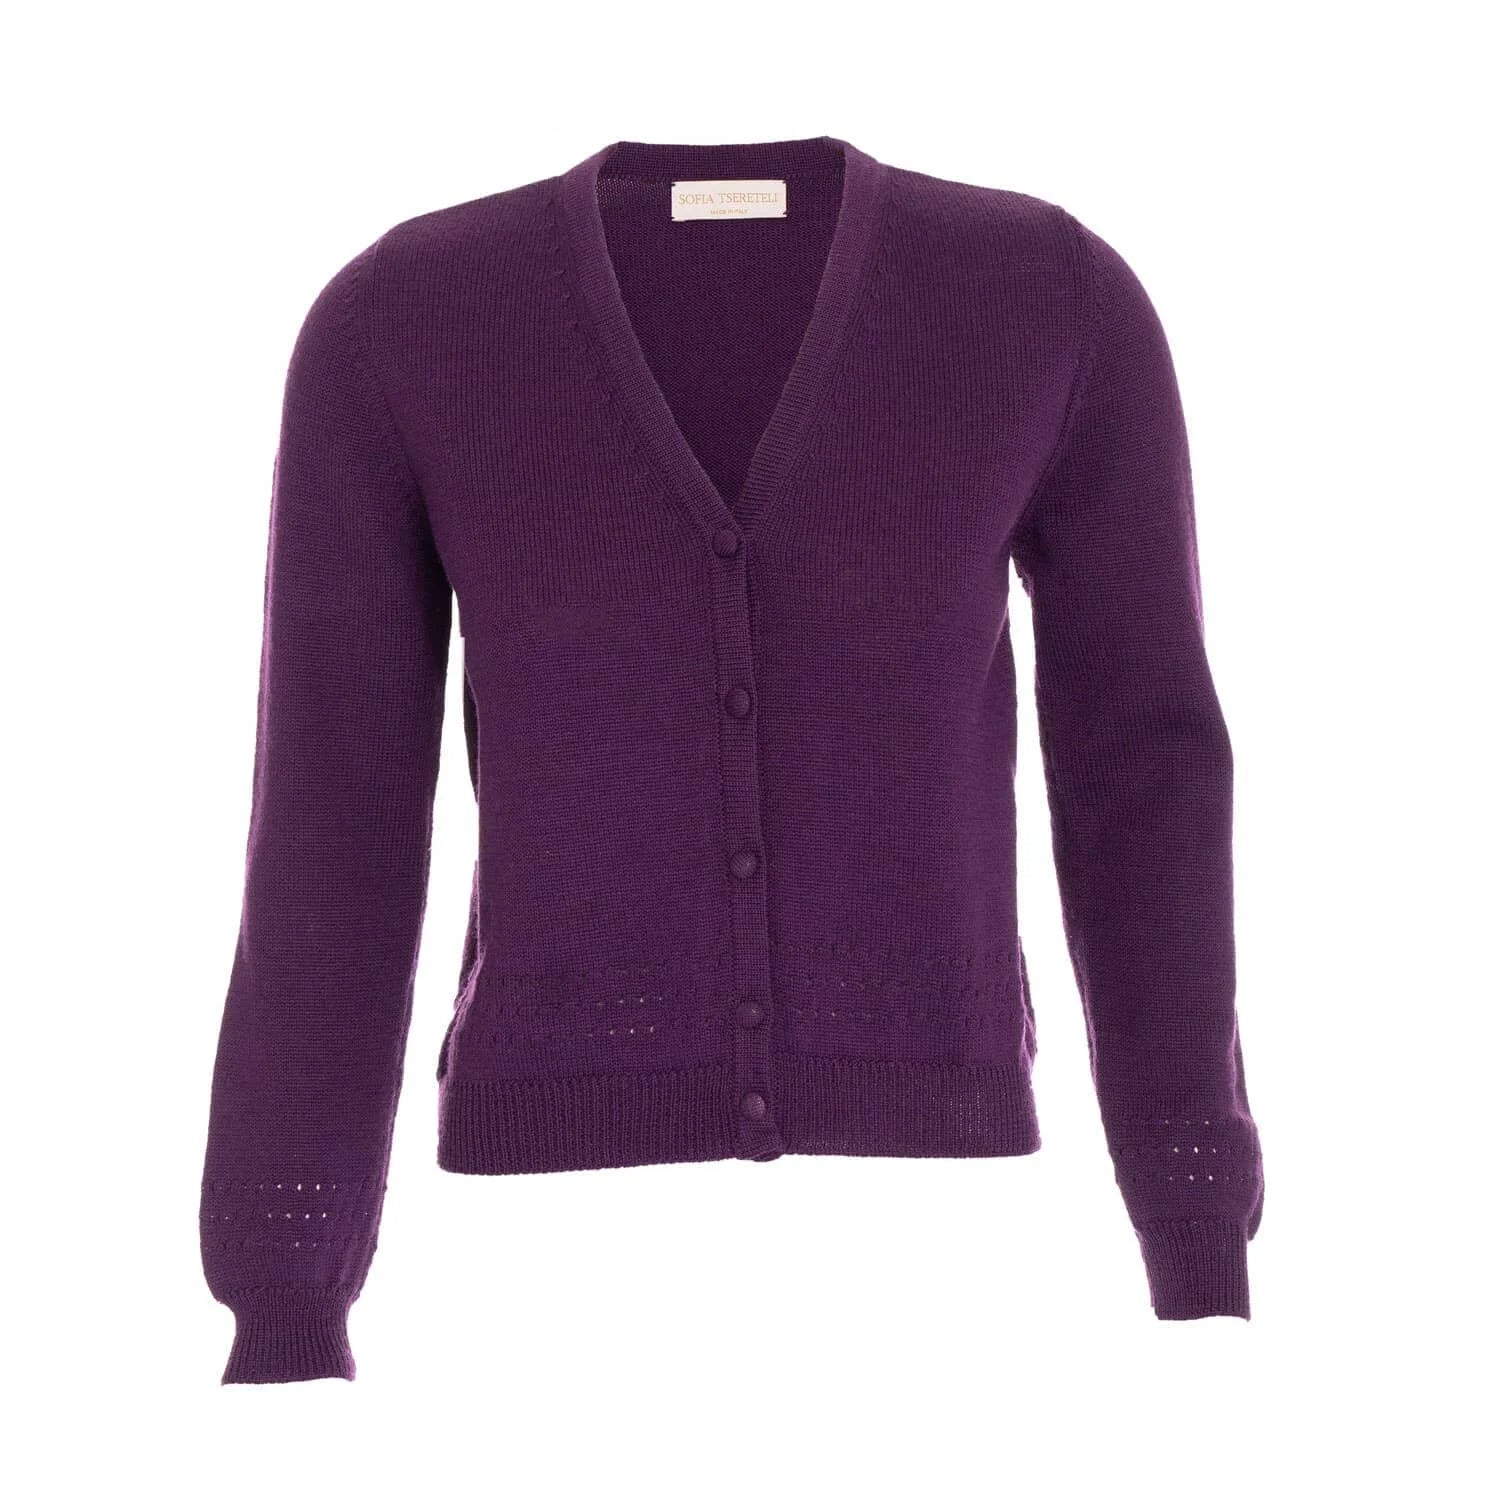 Merino wool knitted cardigan - S / Purple - Knitwear